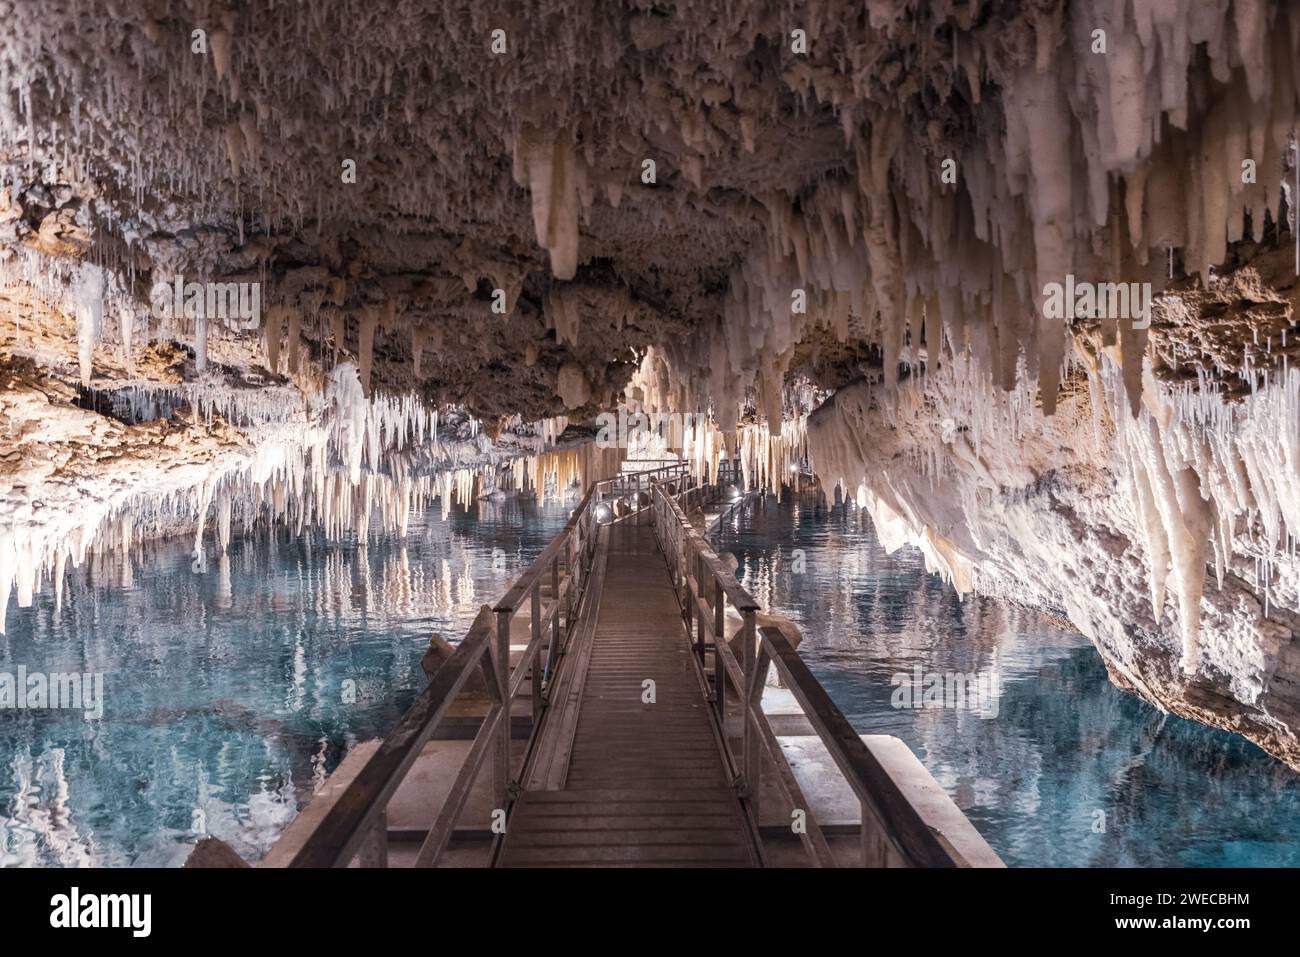 Bermuda's Hidden Gems: Imbarcati in un viaggio nelle affascinanti profondità delle grotte di cristallo e Fantasy, dove la natura svela le sue meraviglie sotterranee. Foto Stock